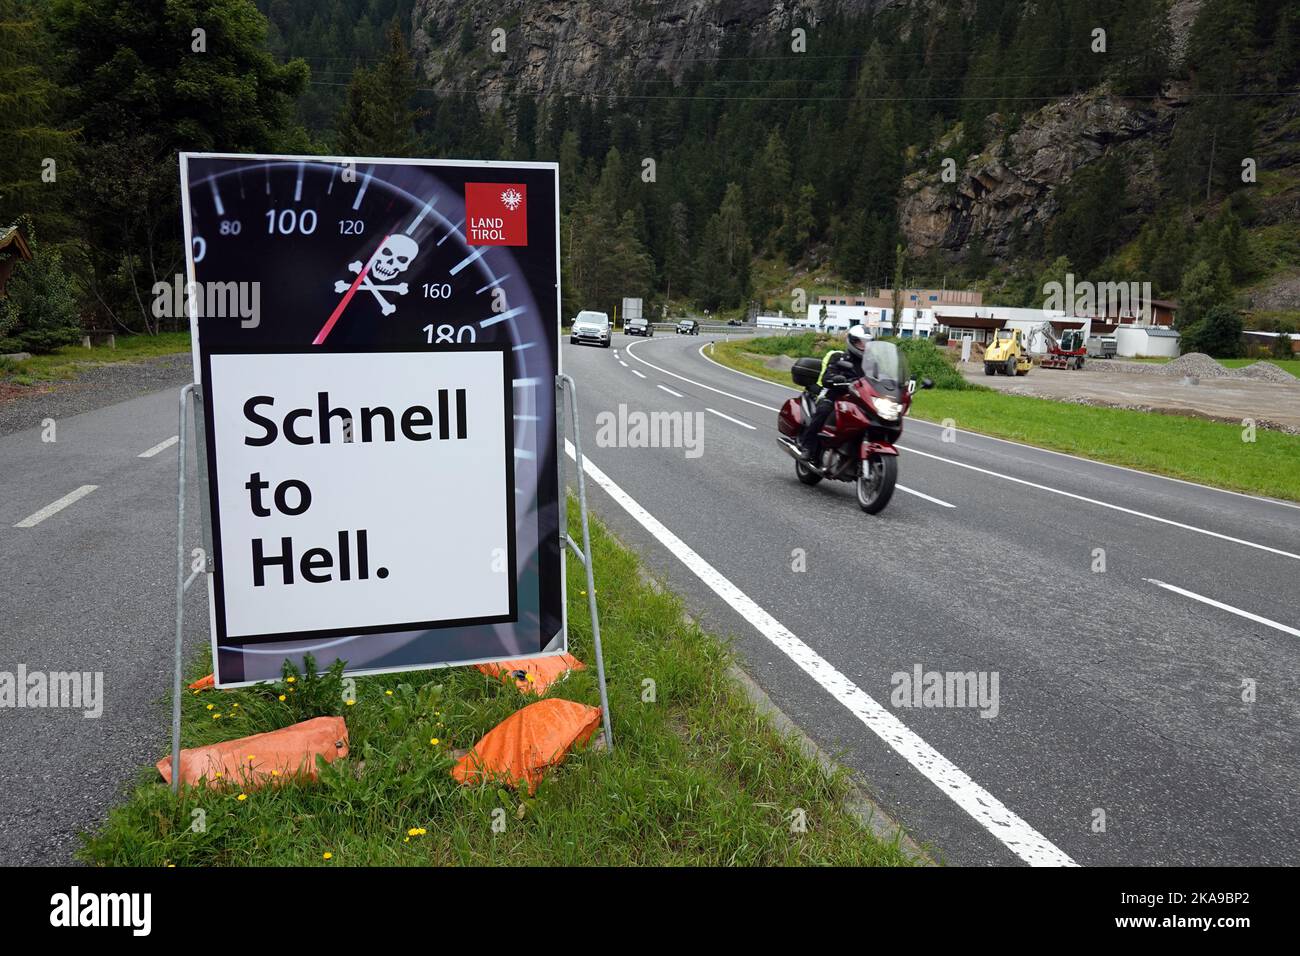 Schnell al infierno, señal de tráfico de velocidad otoño en el valle de Oetztal Austria, Tirol, Alpes, Foto de stock